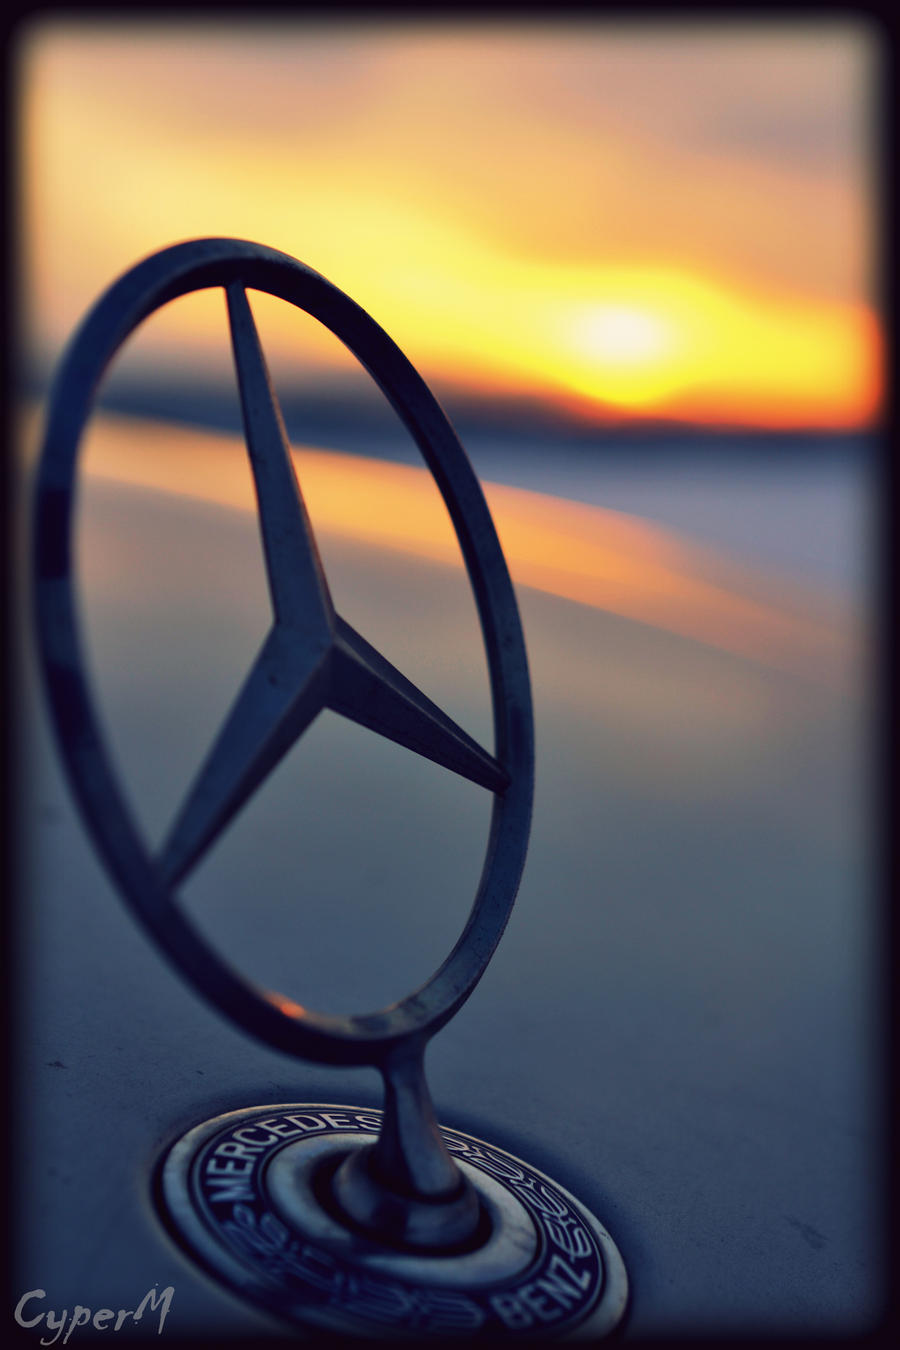 Mercedes - Benz Sunset